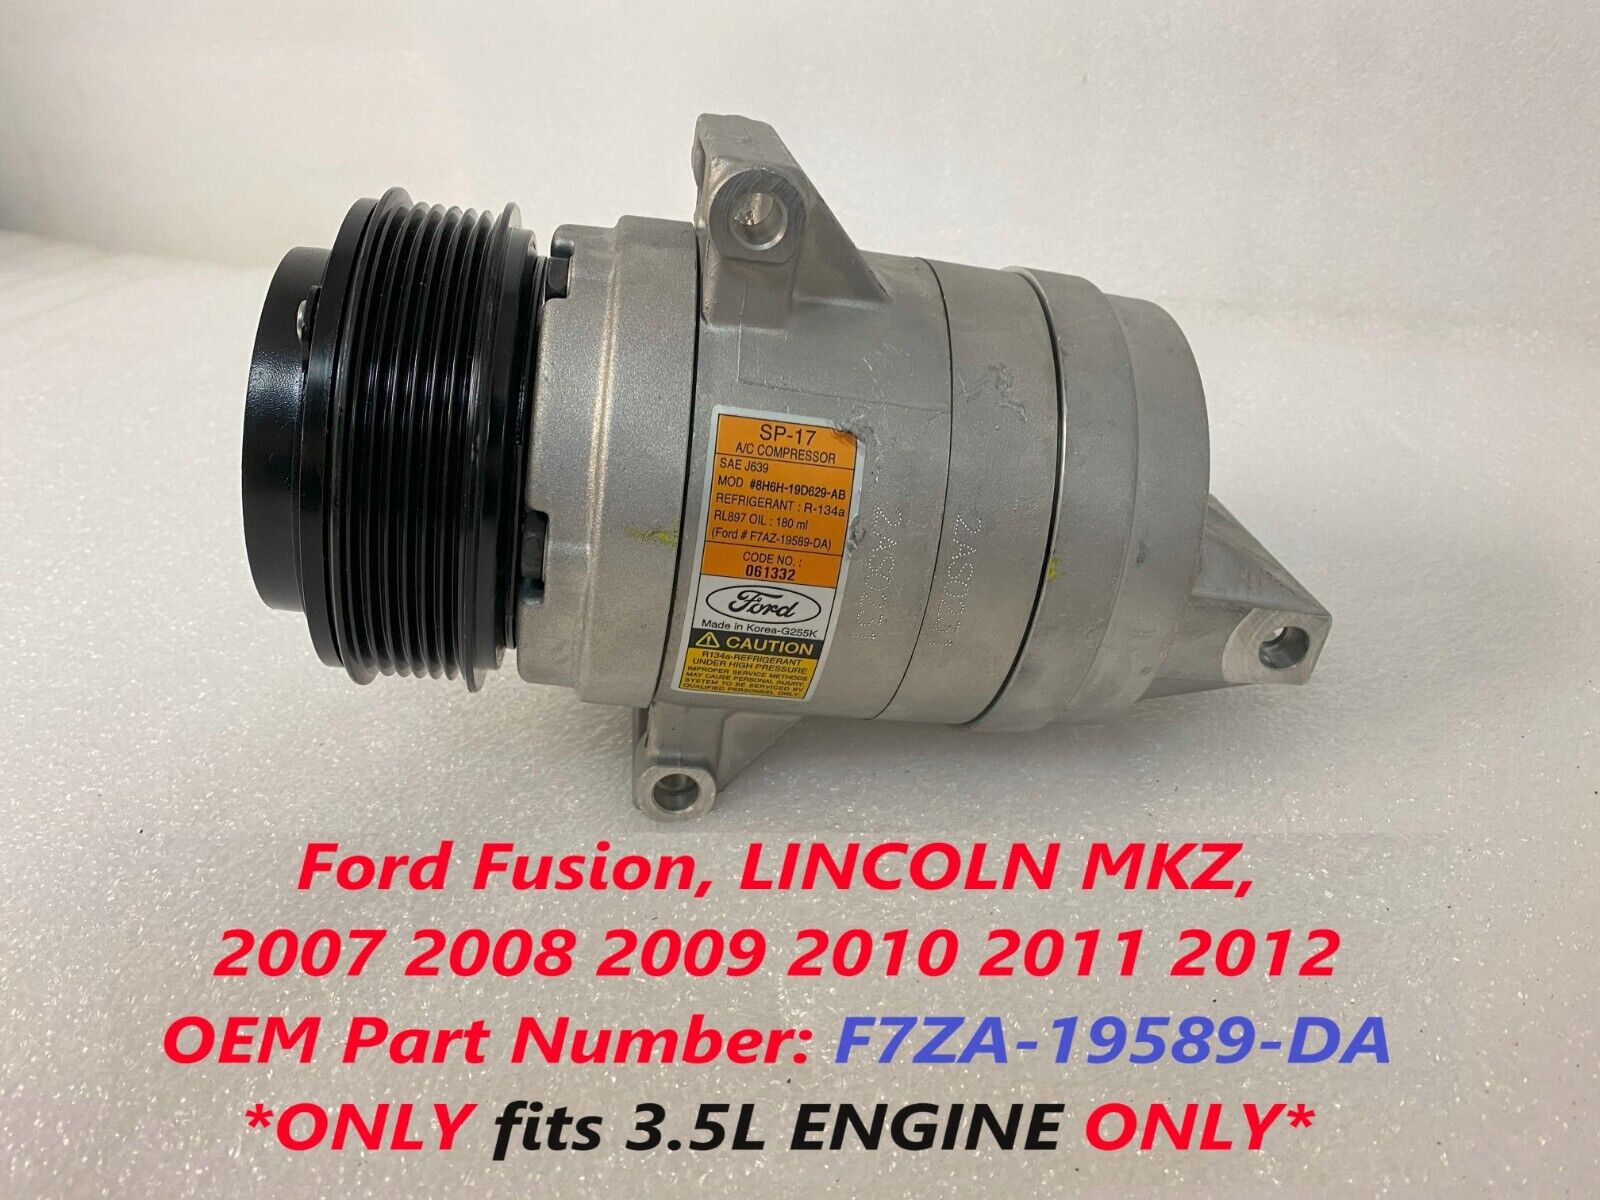 Ford AC Compressor fits Lincoln mkz, Fusion 3.5L 2007 2008 2009 2010 2011